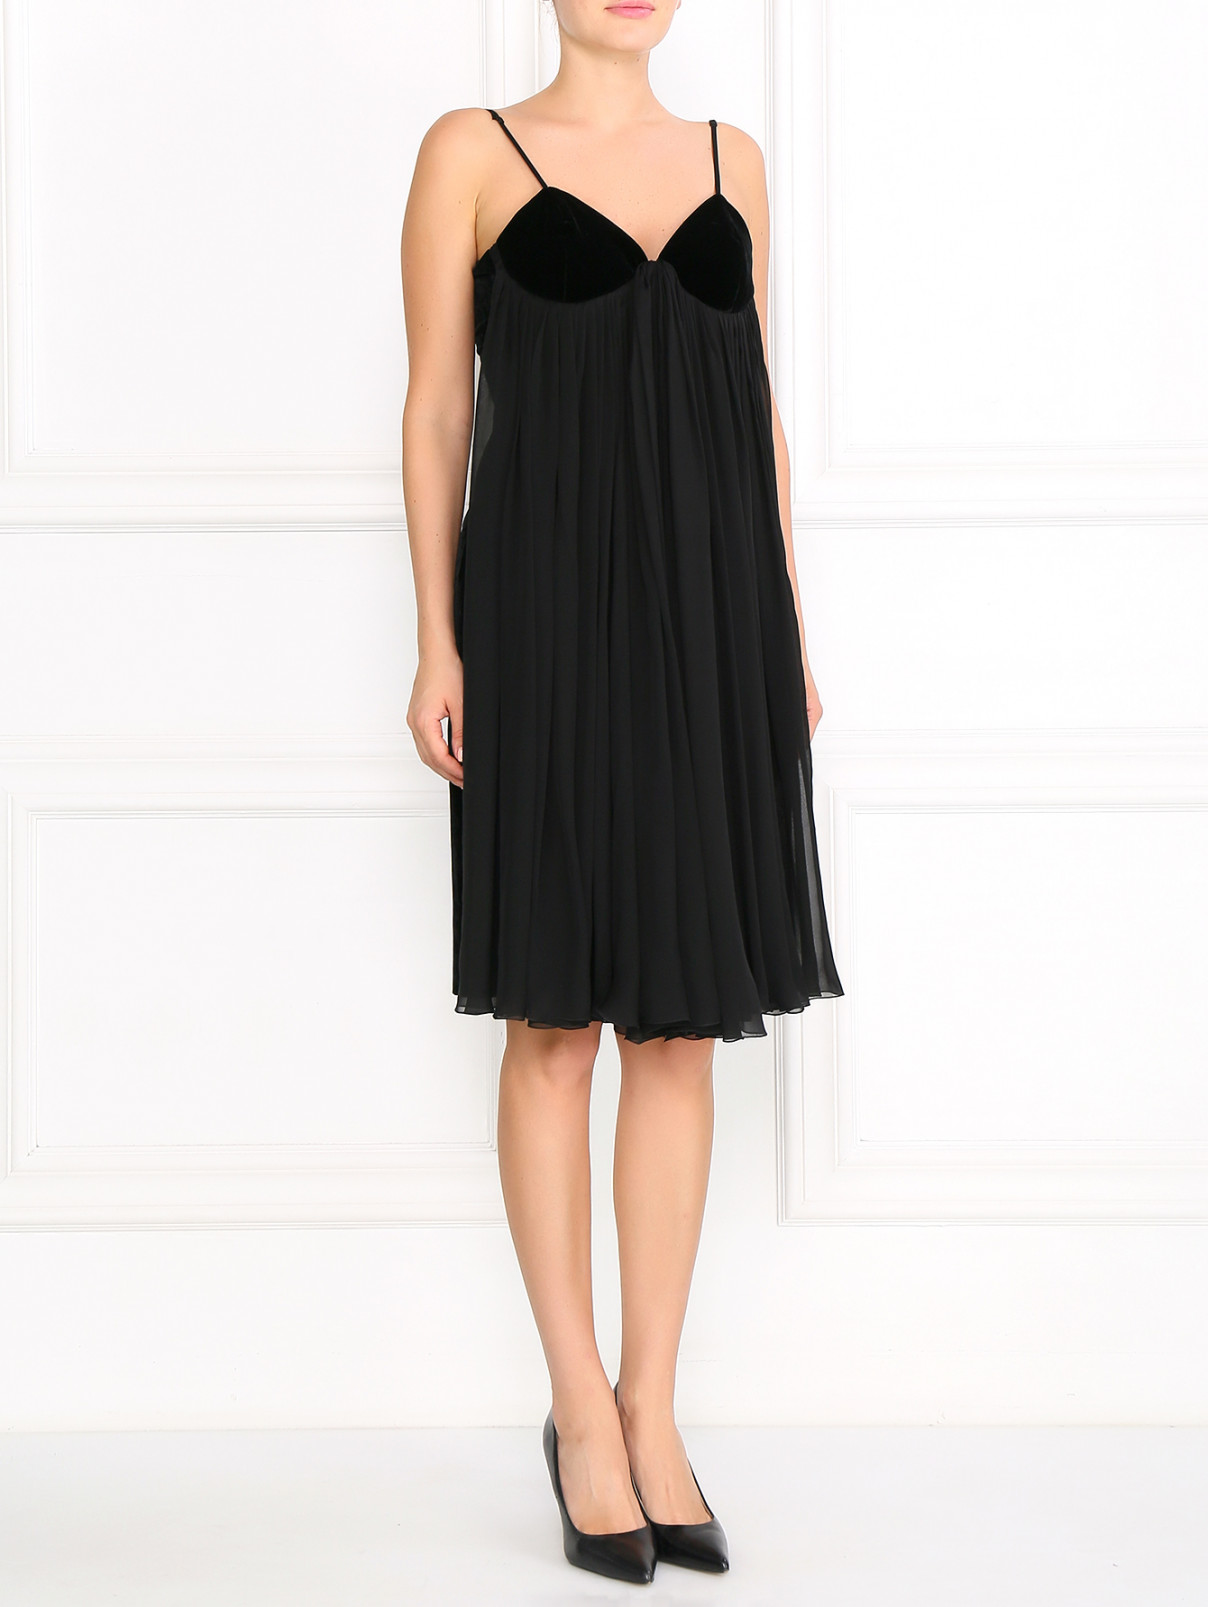 Платье на тонких бретелях с пышной юбкой Jean Paul Gaultier  –  Модель Общий вид  – Цвет:  Черный